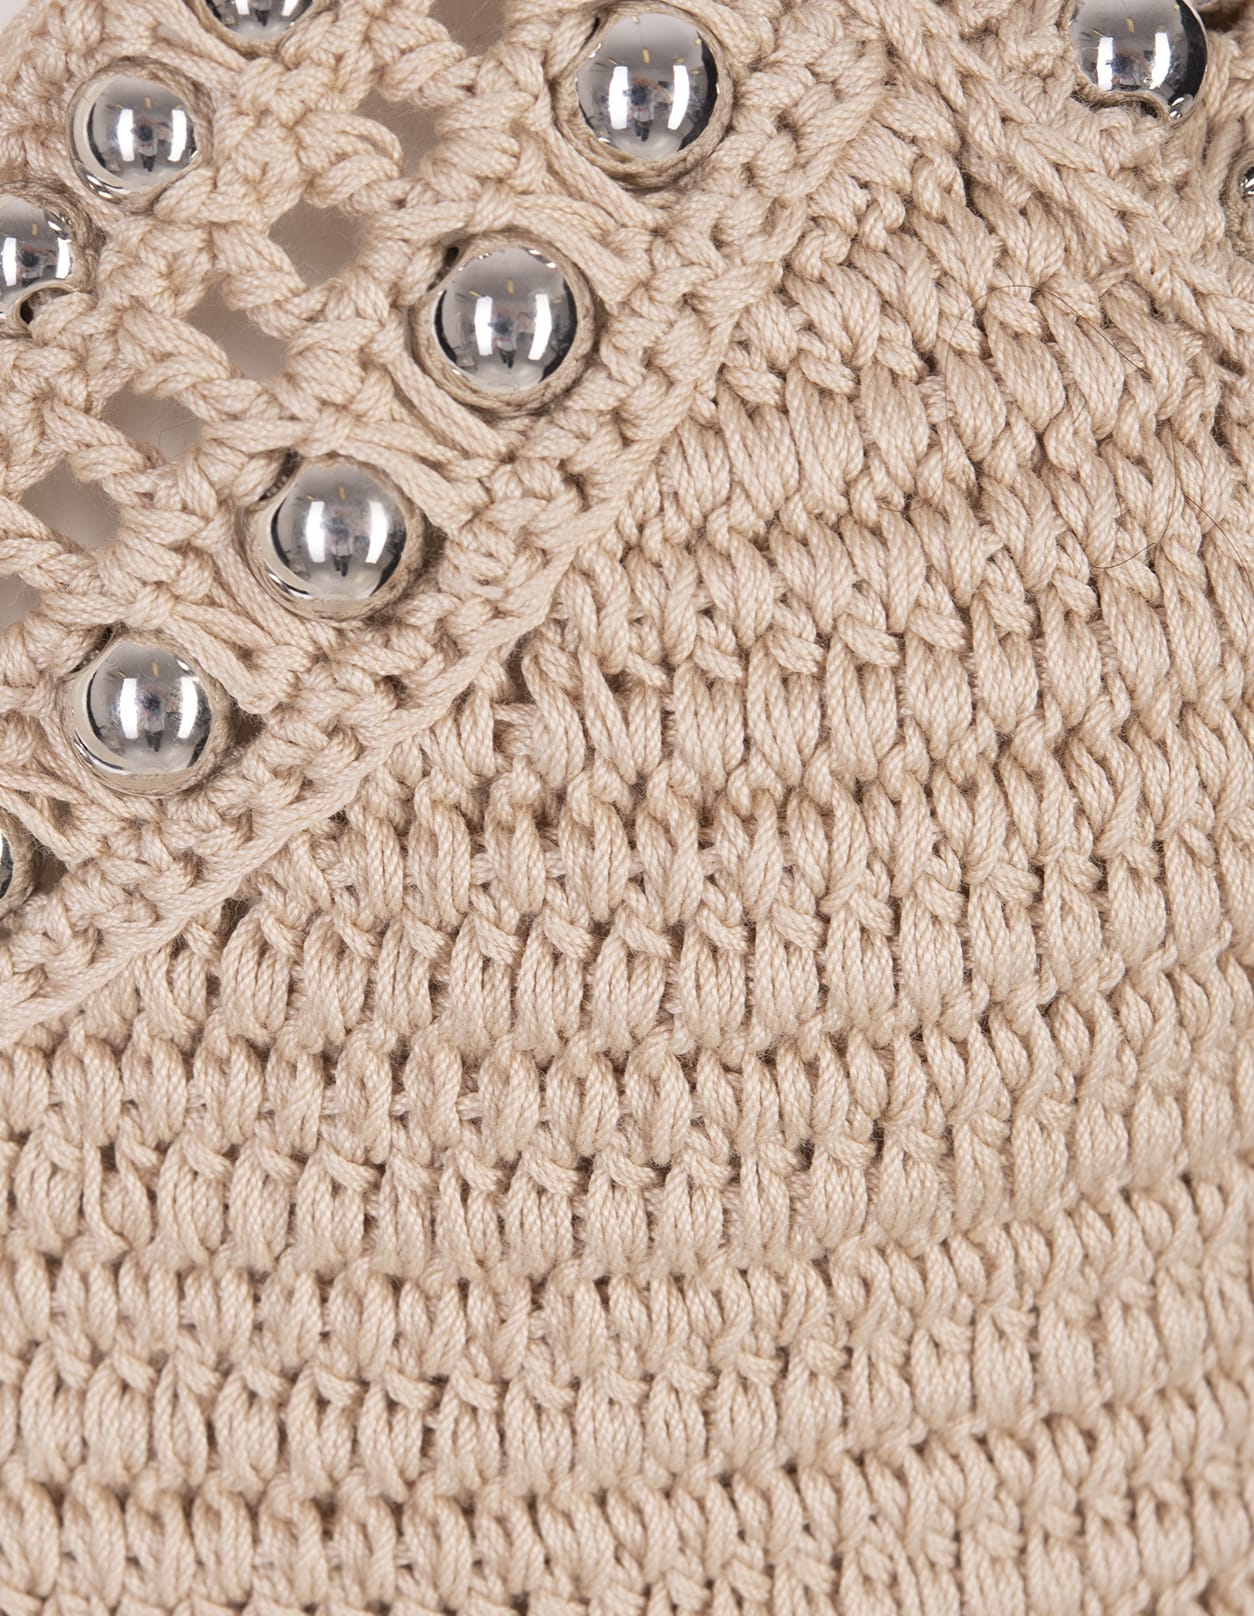 Shop Rabanne Beige Crochet Top With Pearls